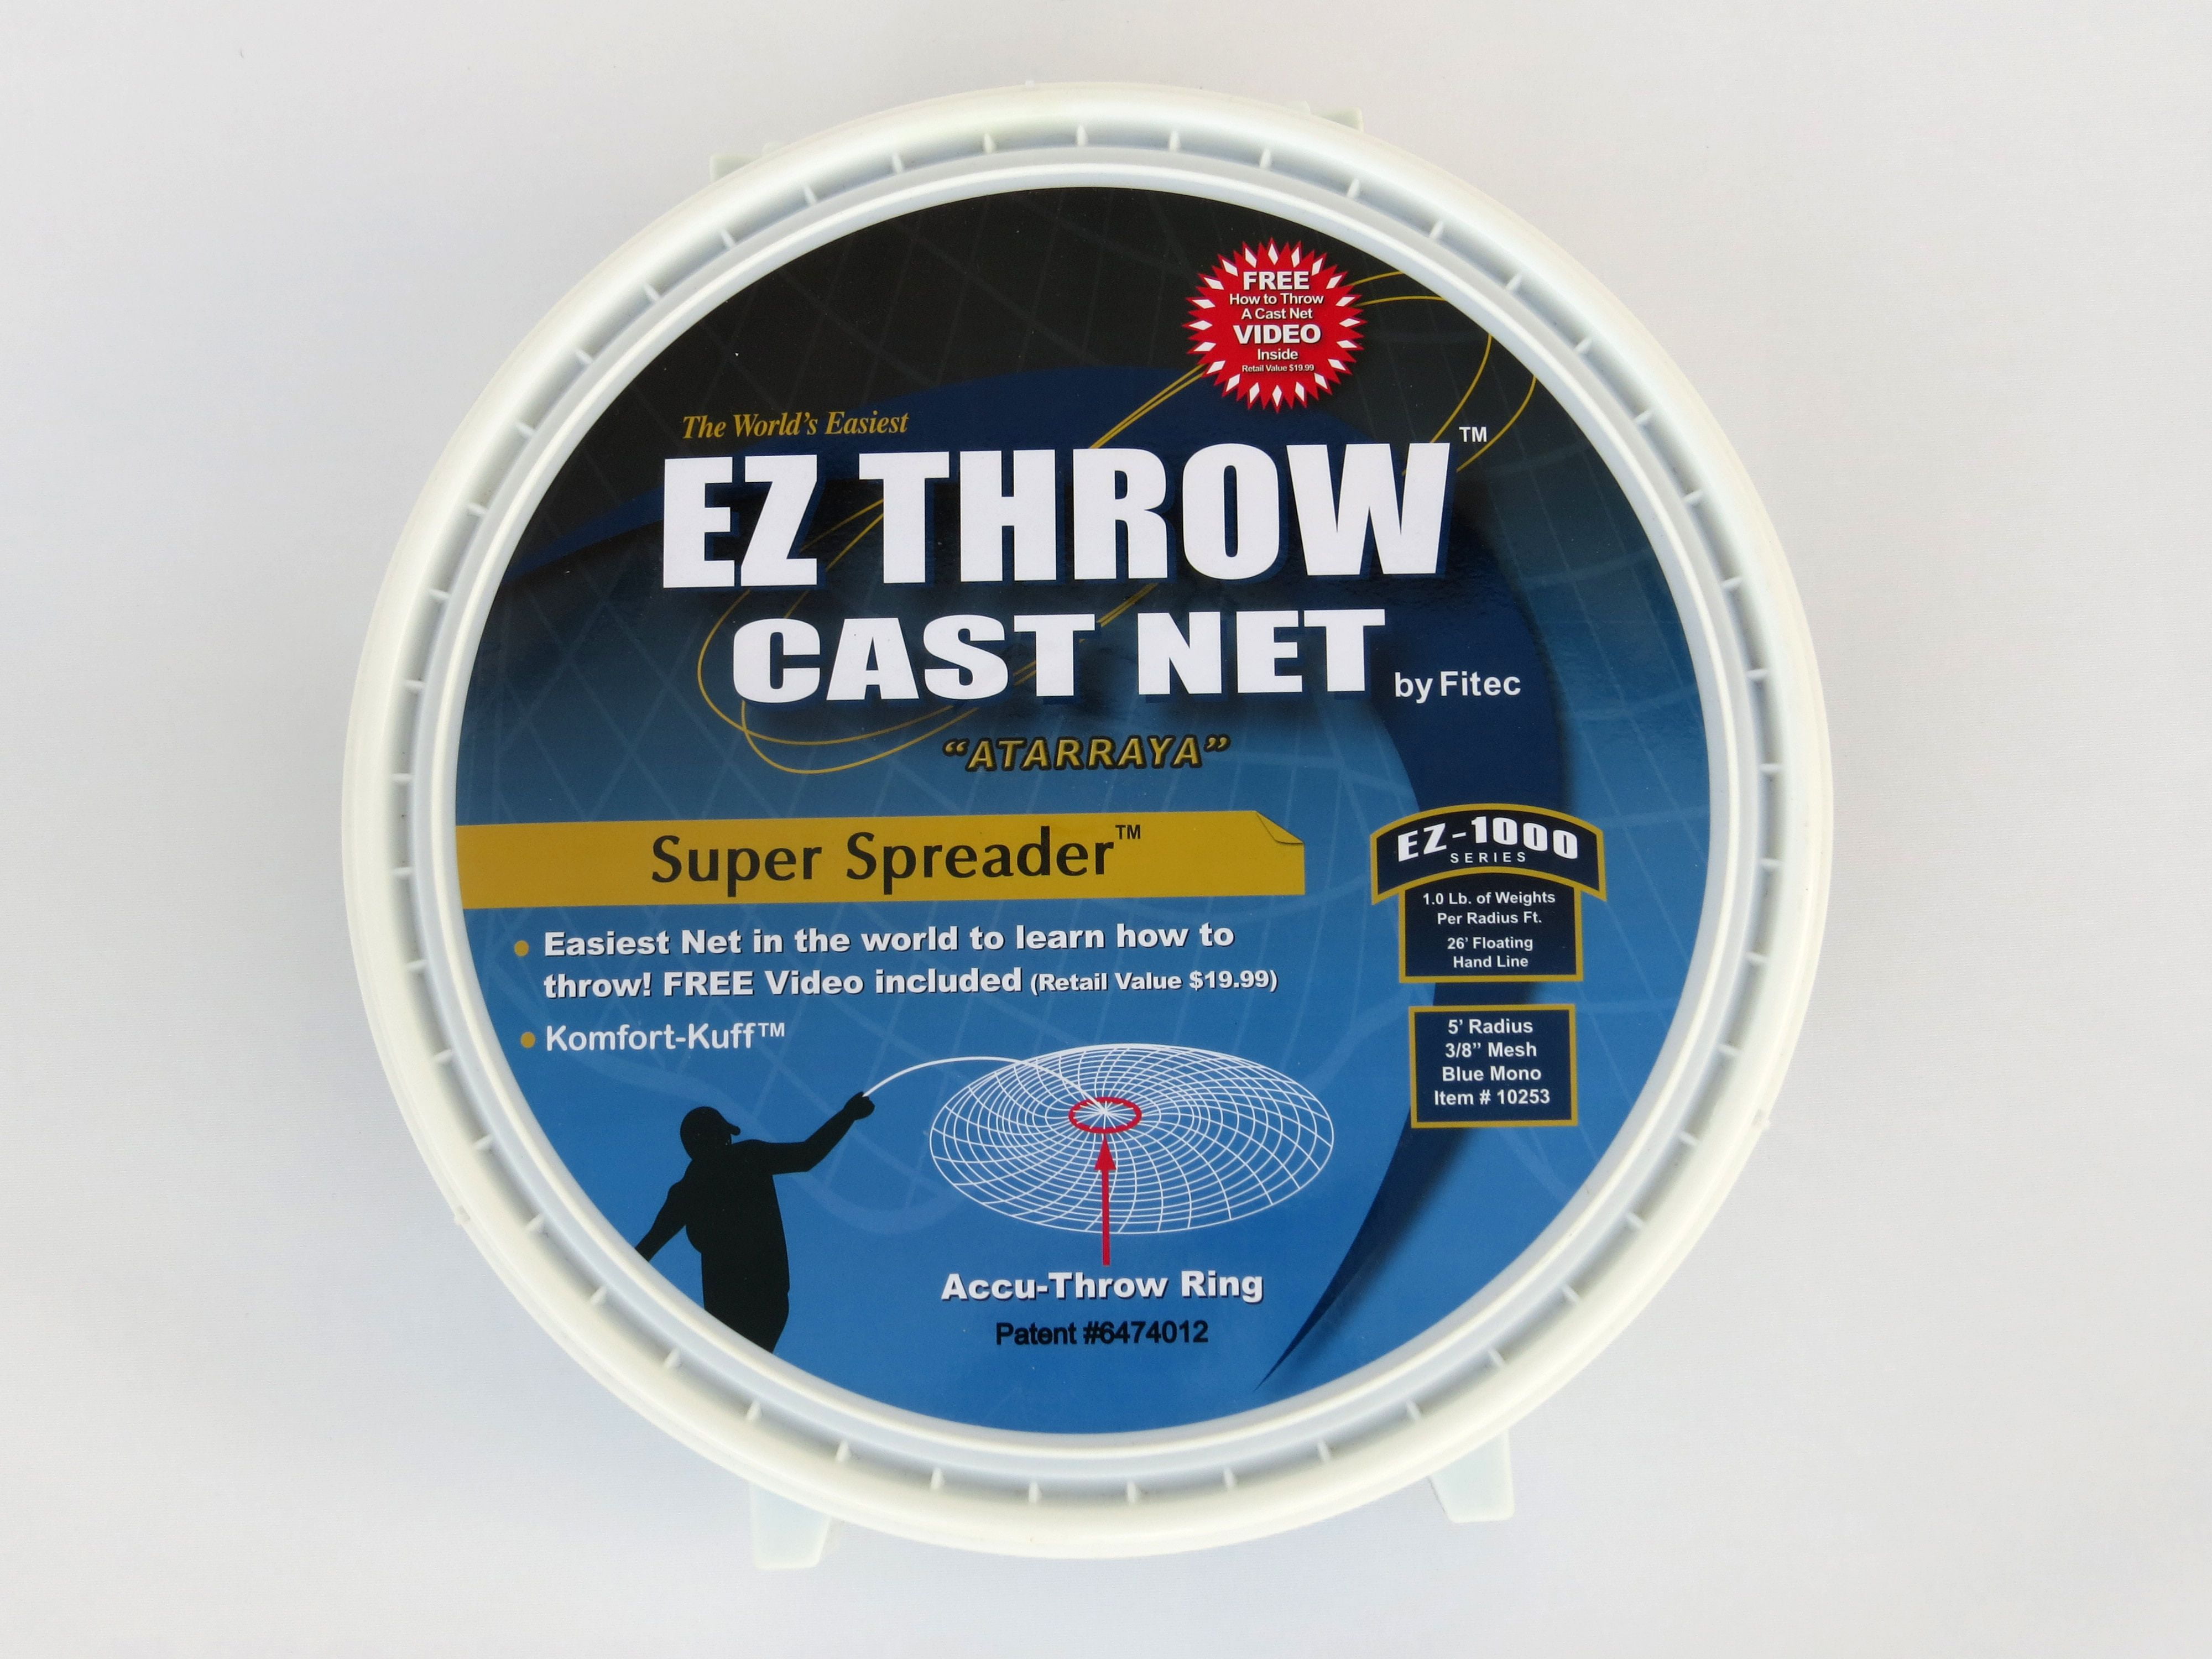 Fitec Super Spreader EZ Throw 750 Cast Net, 4 ft. 38 India | Ubuy